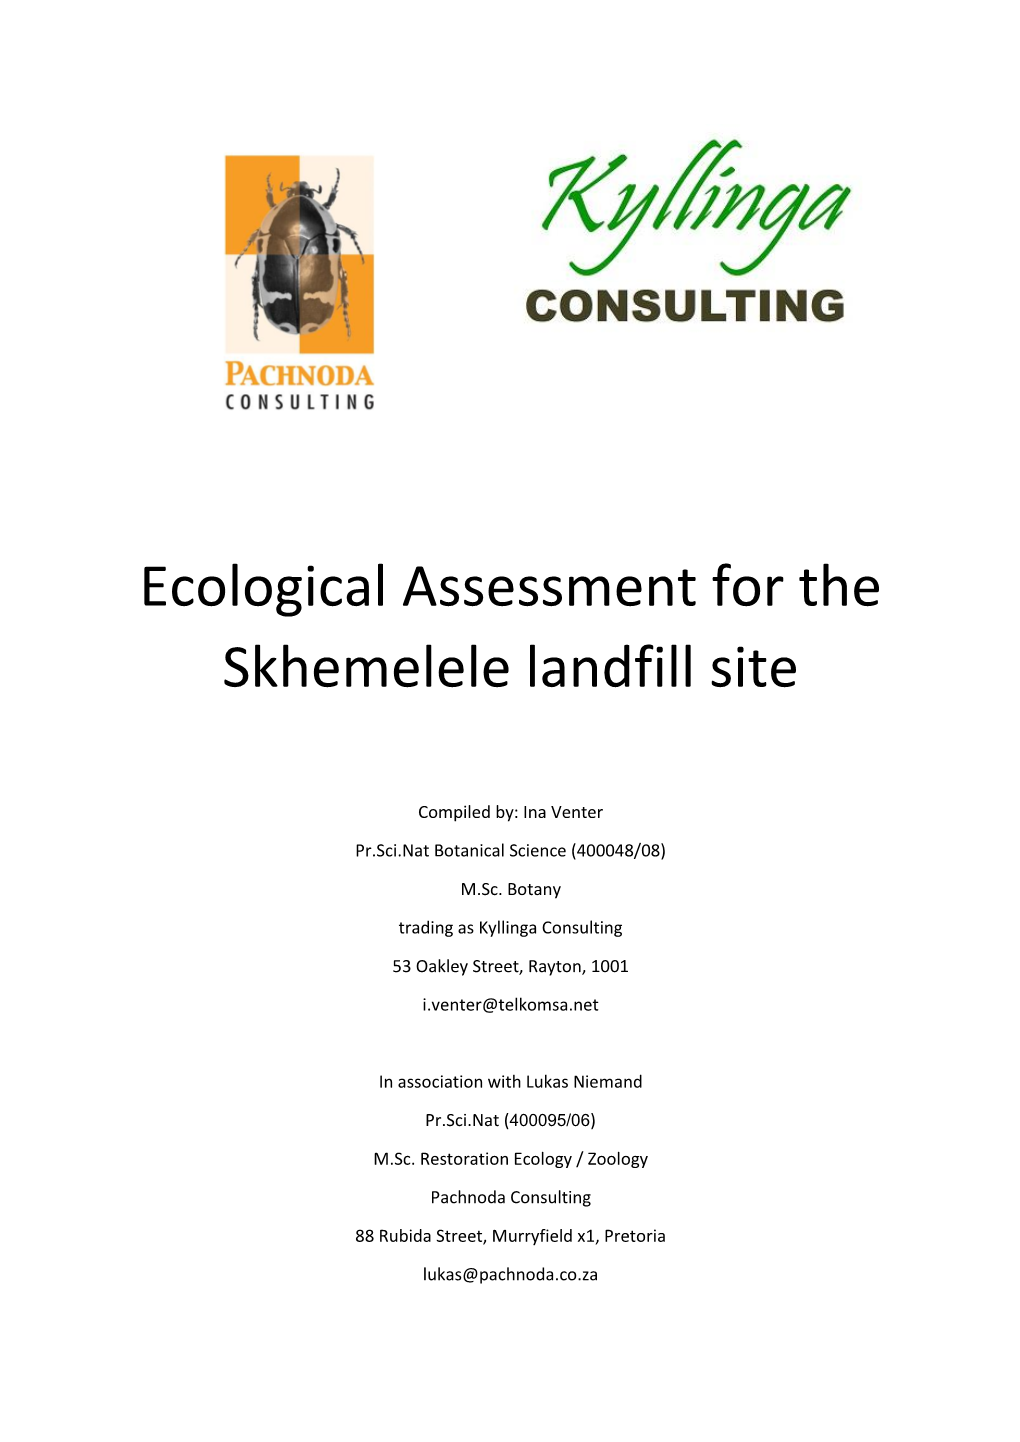 Ecological Assessment for the Skhemelele Landfill Site